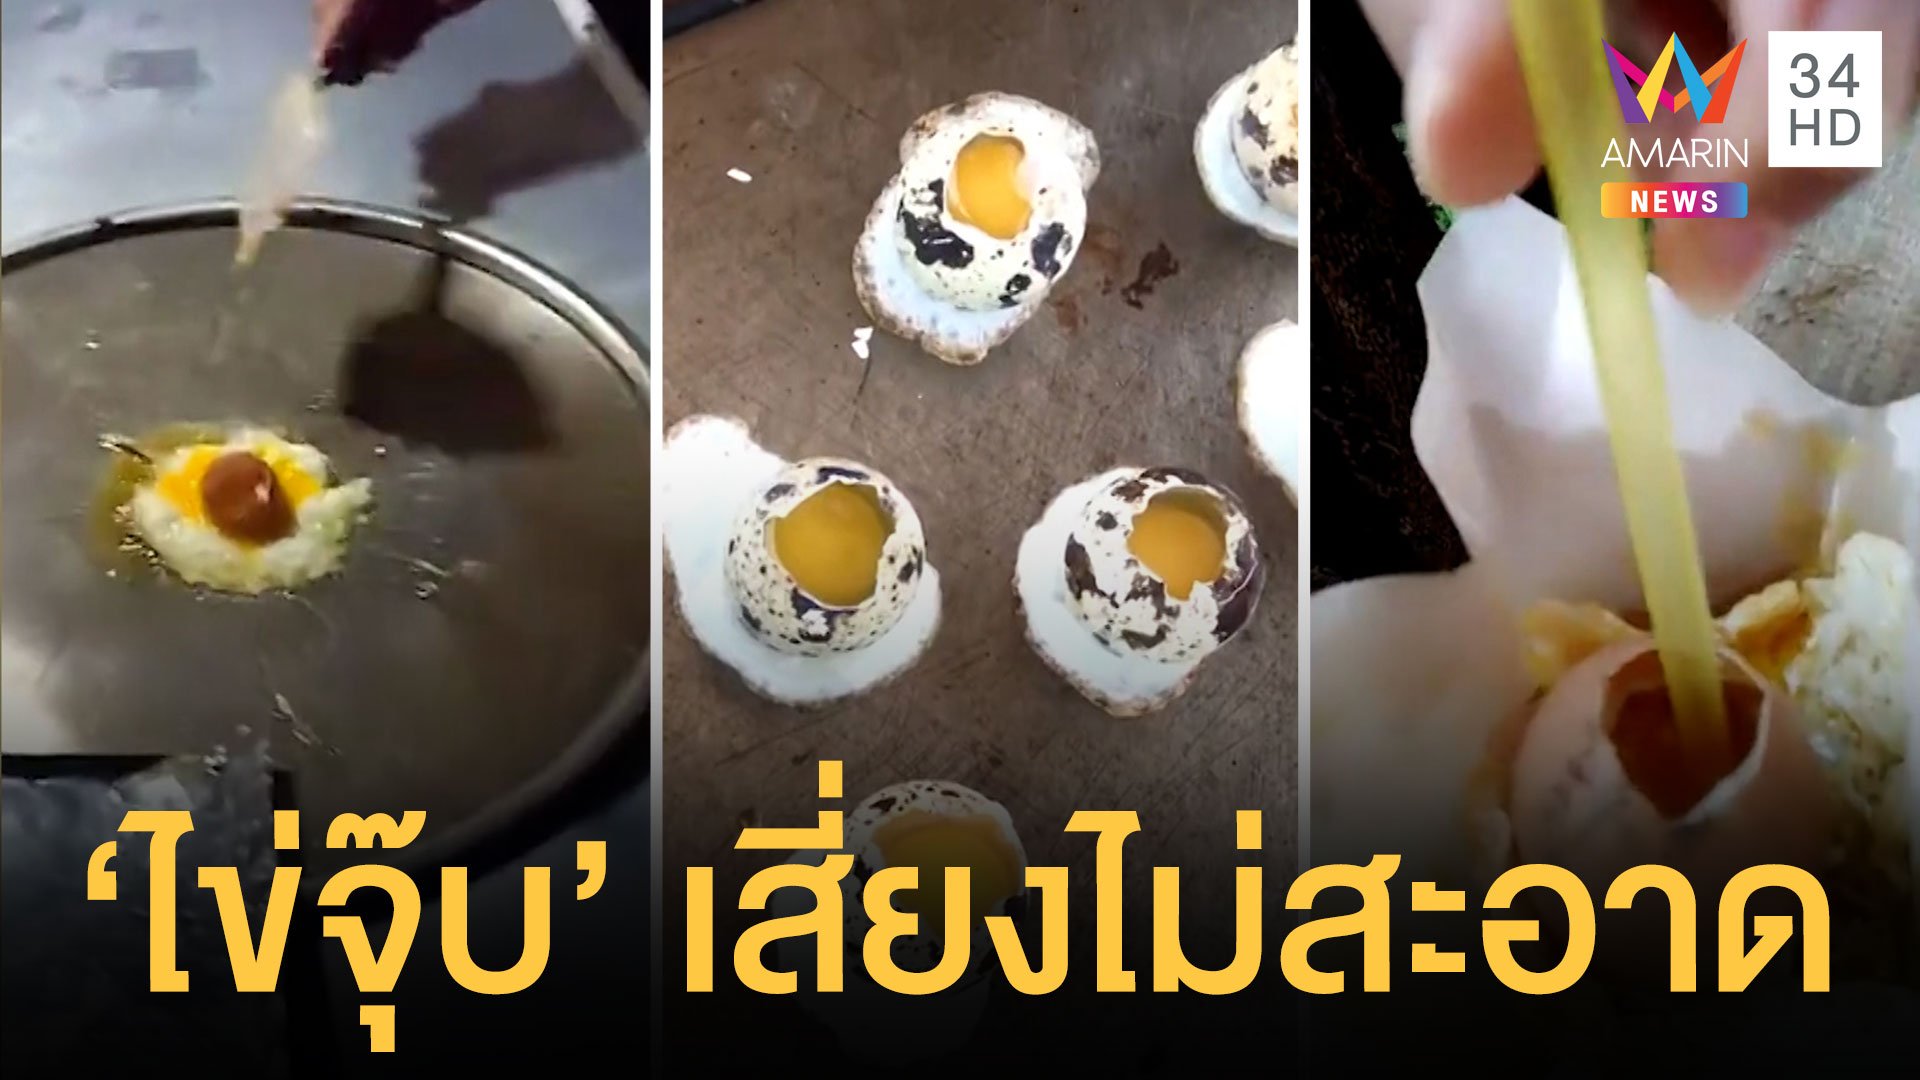 เตือนห้ามกินไข่จุ๊บเสี่ยงไม่สะอาด แนะให้ปรุงสุก | ข่าวอรุณอมรินทร์ | 27 เม.ย. 64 | AMARIN TVHD34